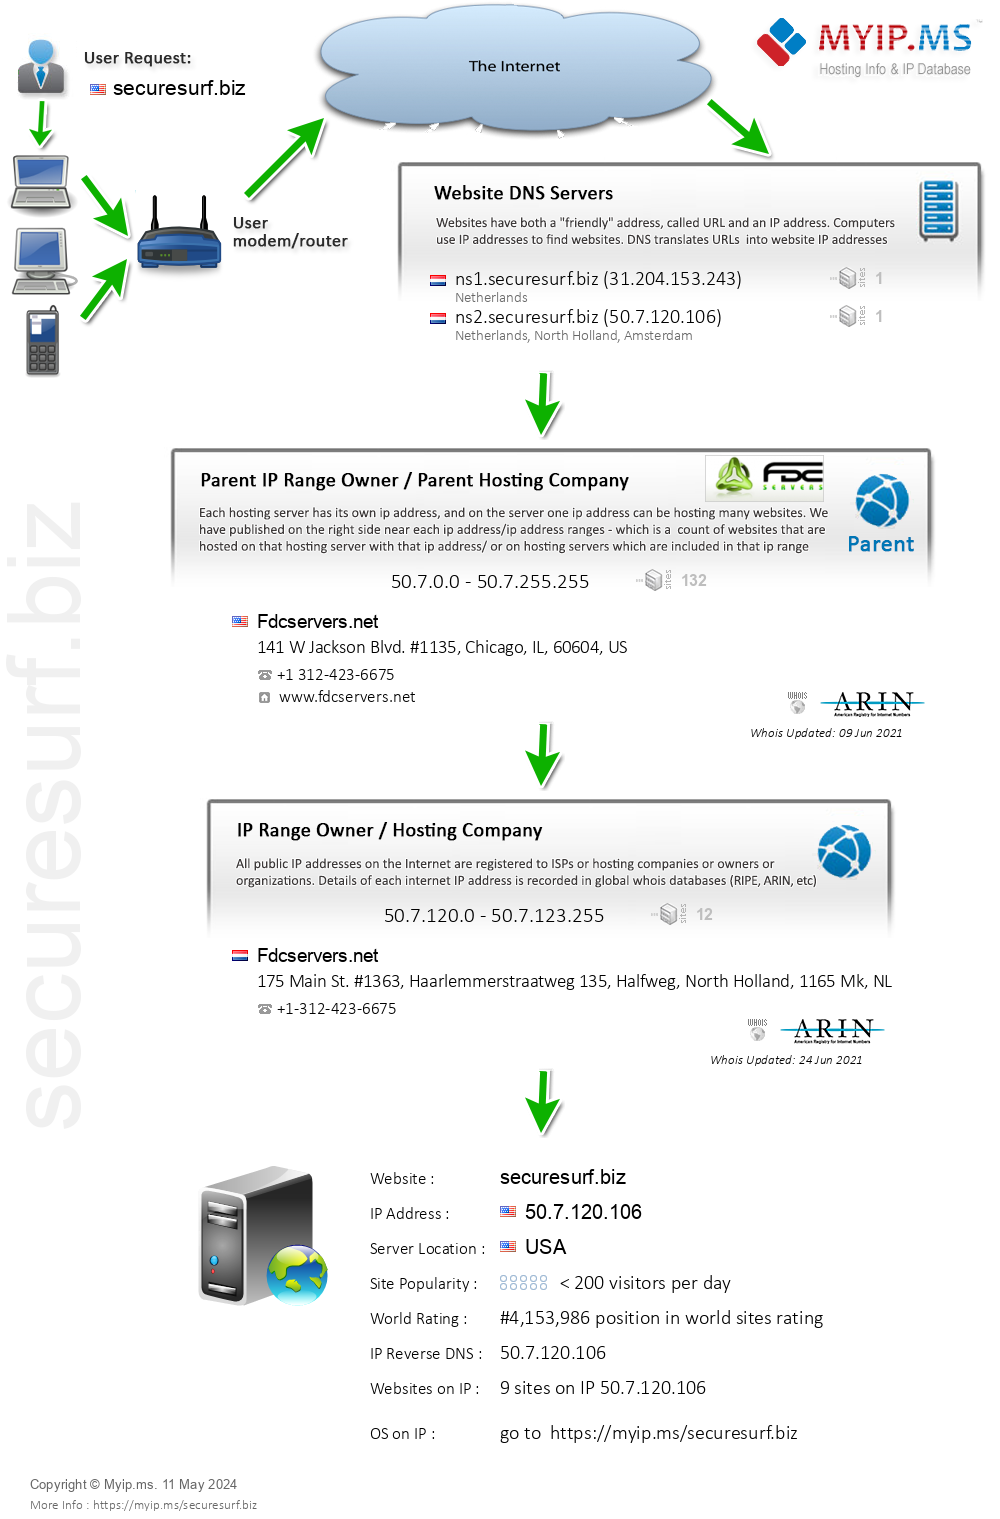 Securesurf.biz - Website Hosting Visual IP Diagram